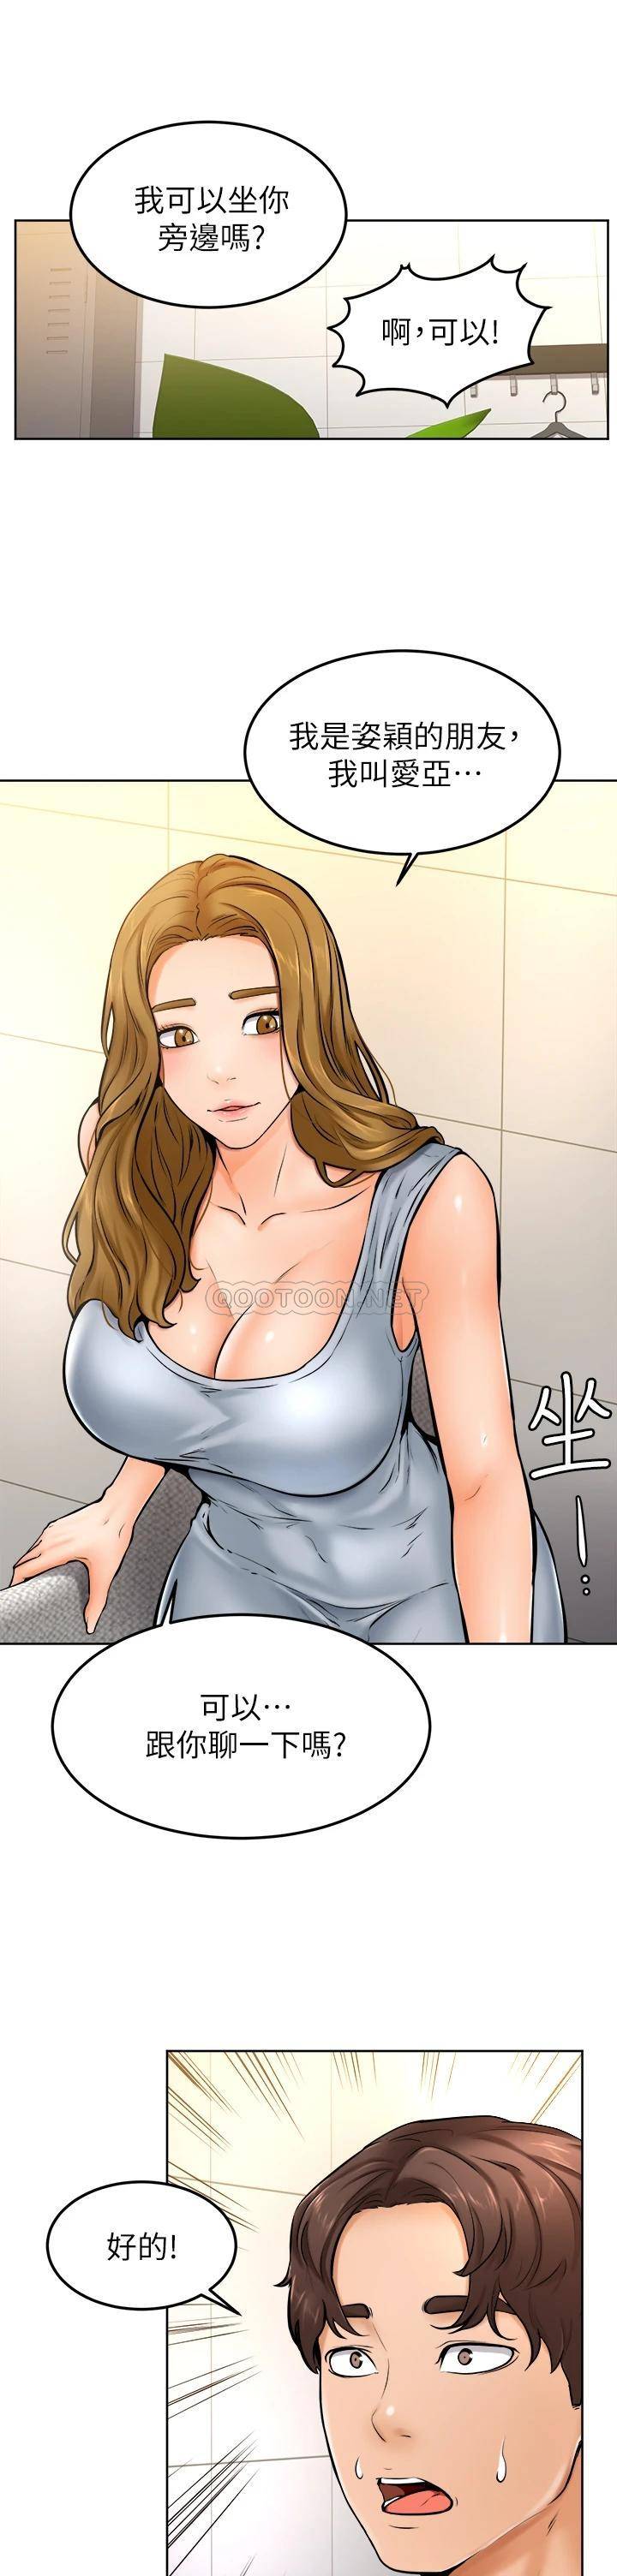 韩国污漫画 學弟,甘巴爹捏! 第10话文静学姐的大胆诱惑 31